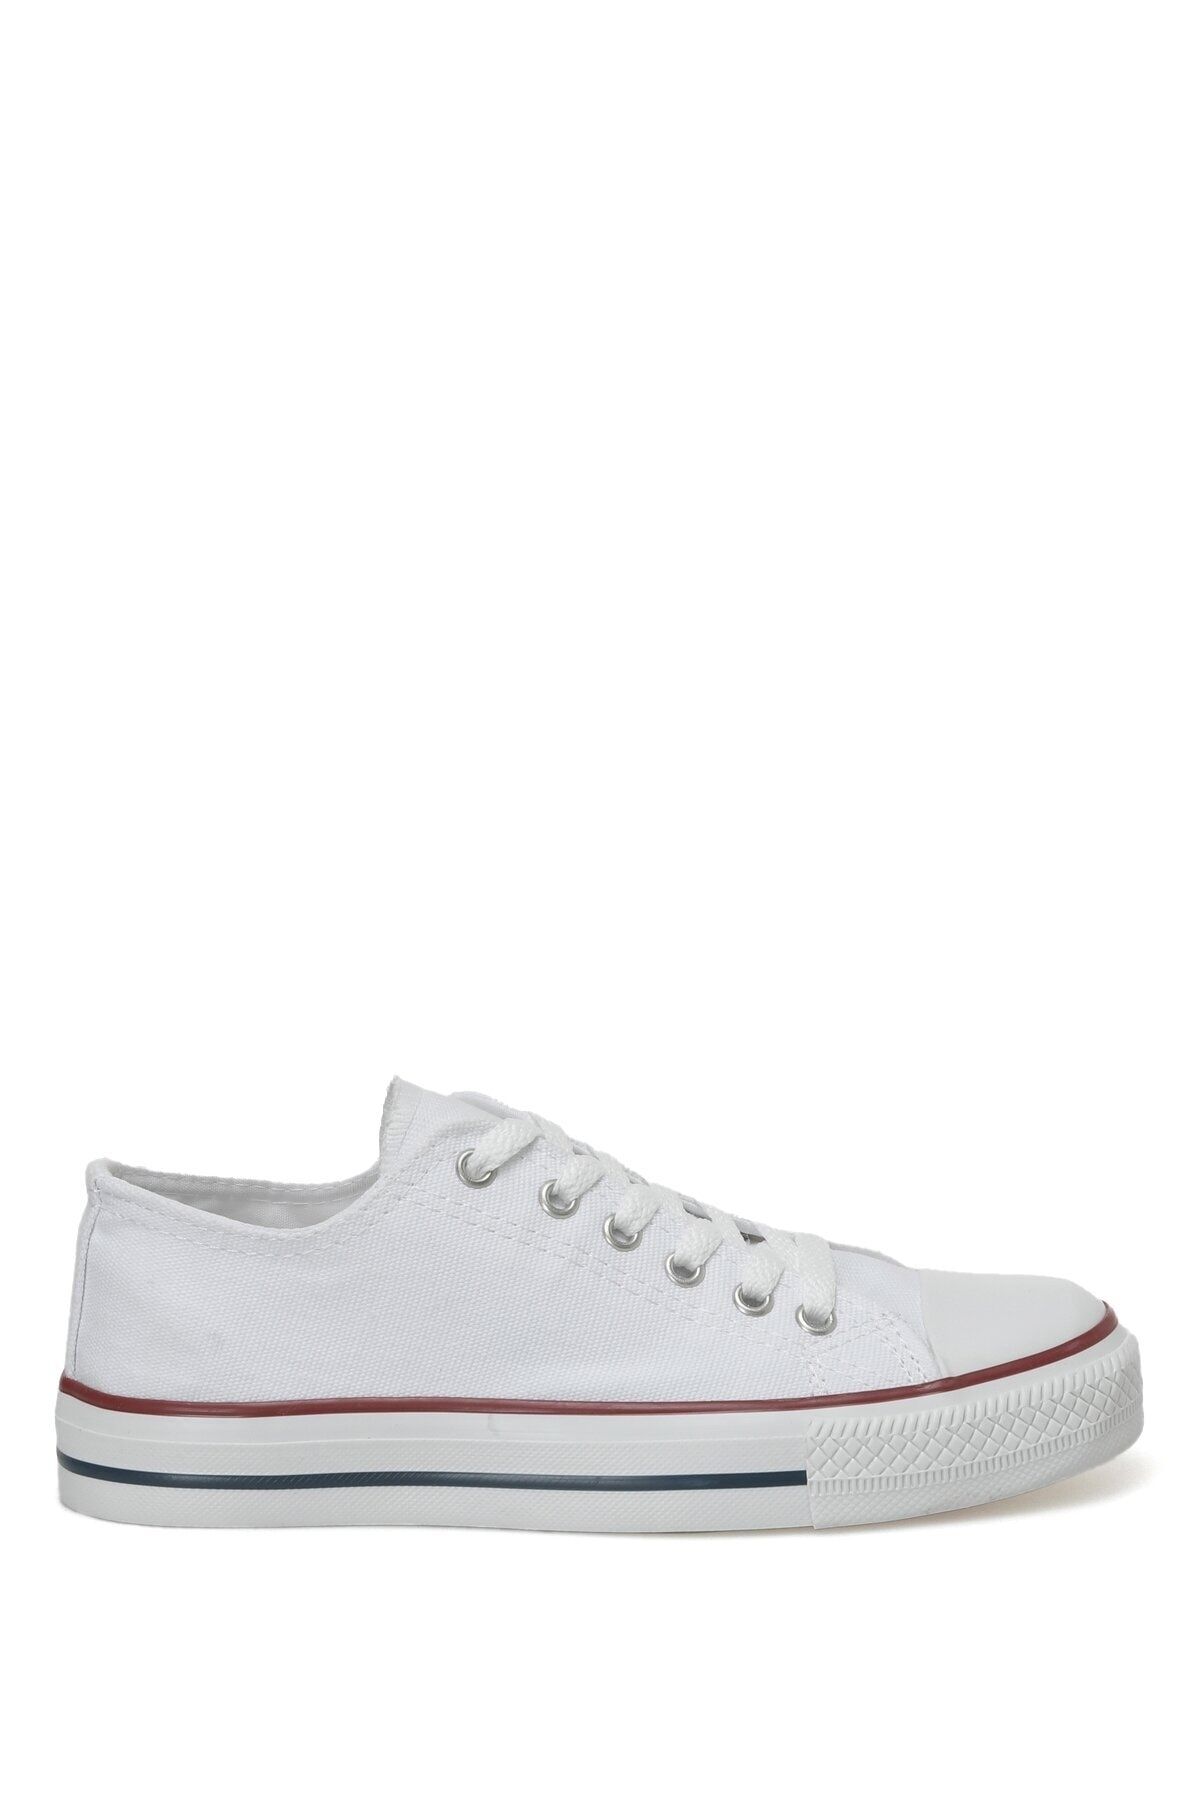 Polaris 351646.z 3fx Beyaz Kadın Sneaker